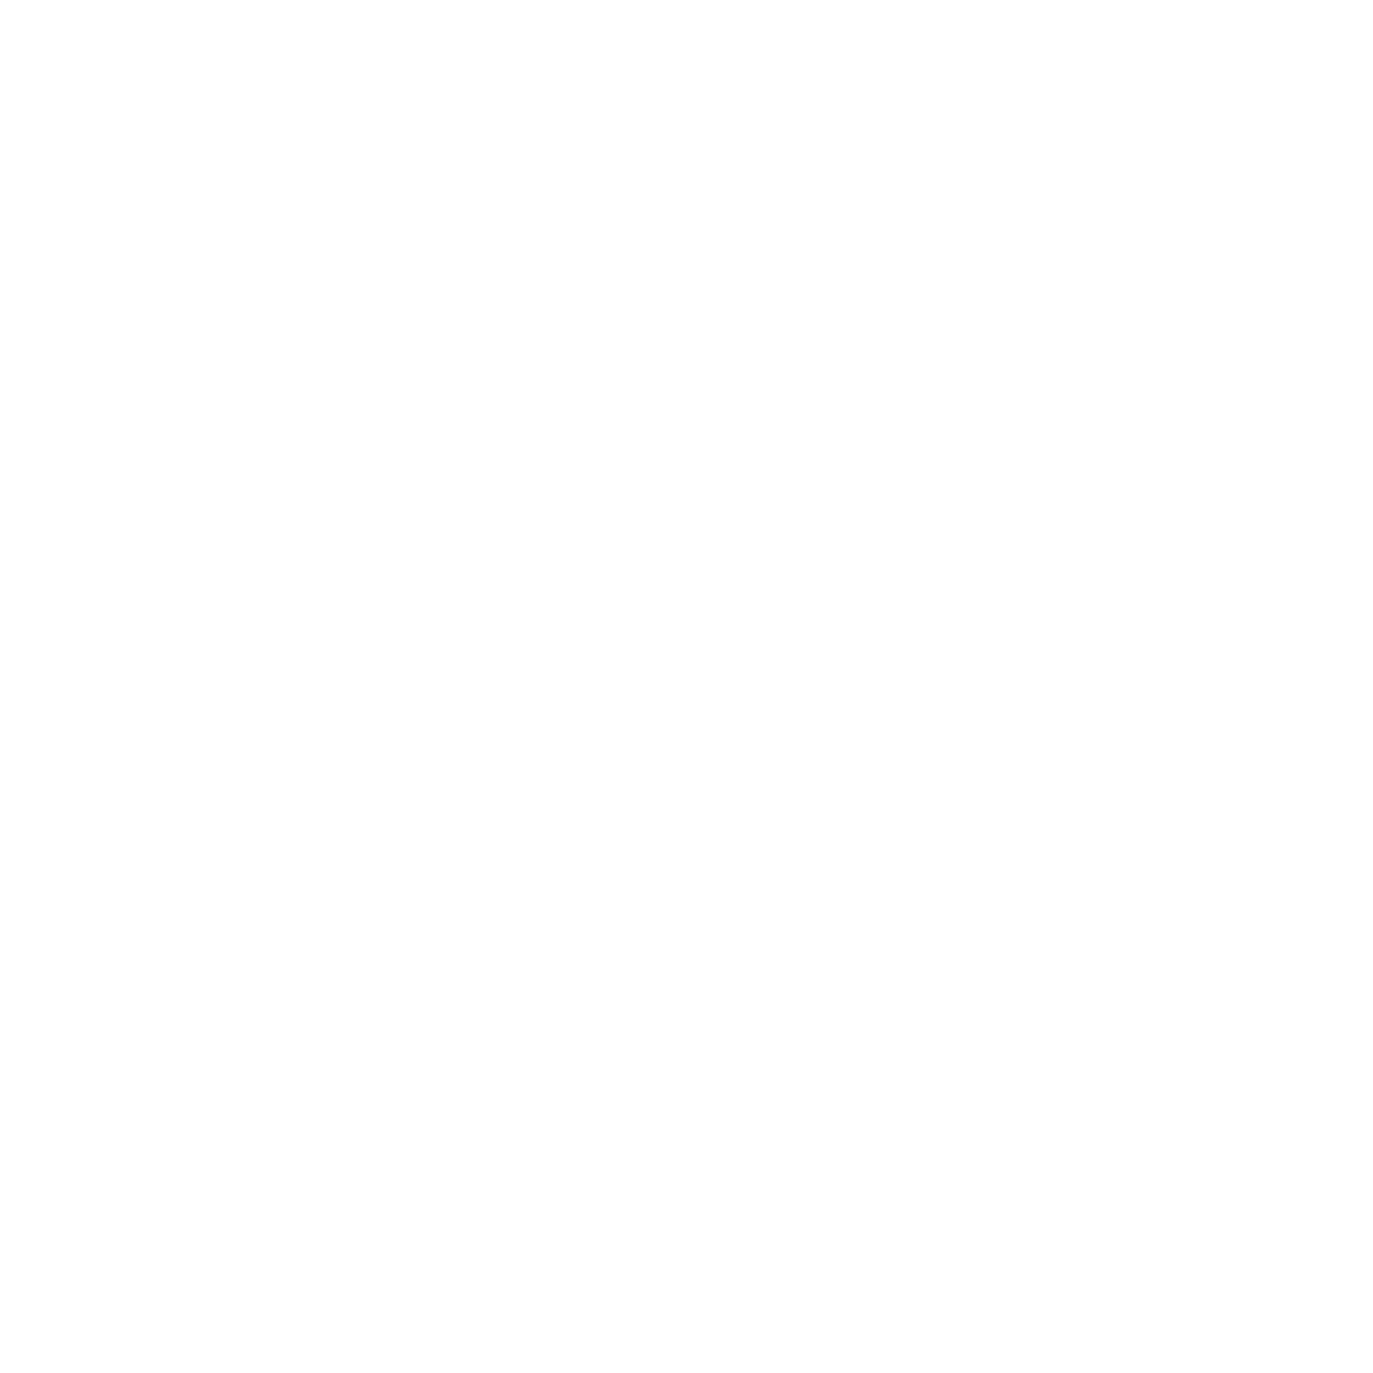 wing4u - HacksawGaming